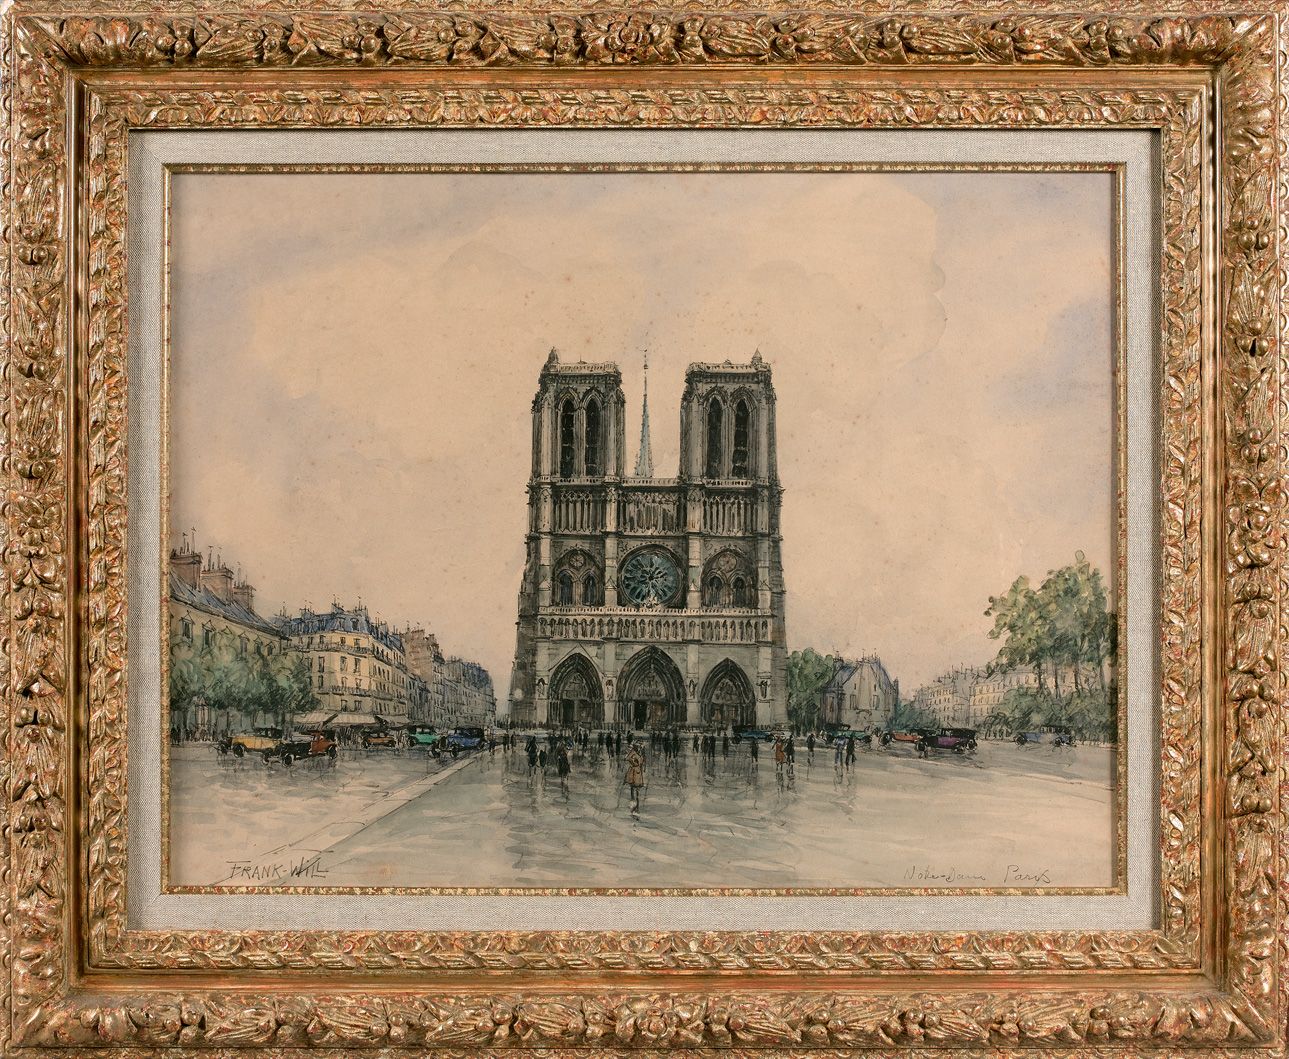 Null 弗兰克-威尔 (1900-1951)

巴黎圣母院

水彩画左下方有签名，位于右下方。

高度44 - 宽度59厘米

小的划痕。